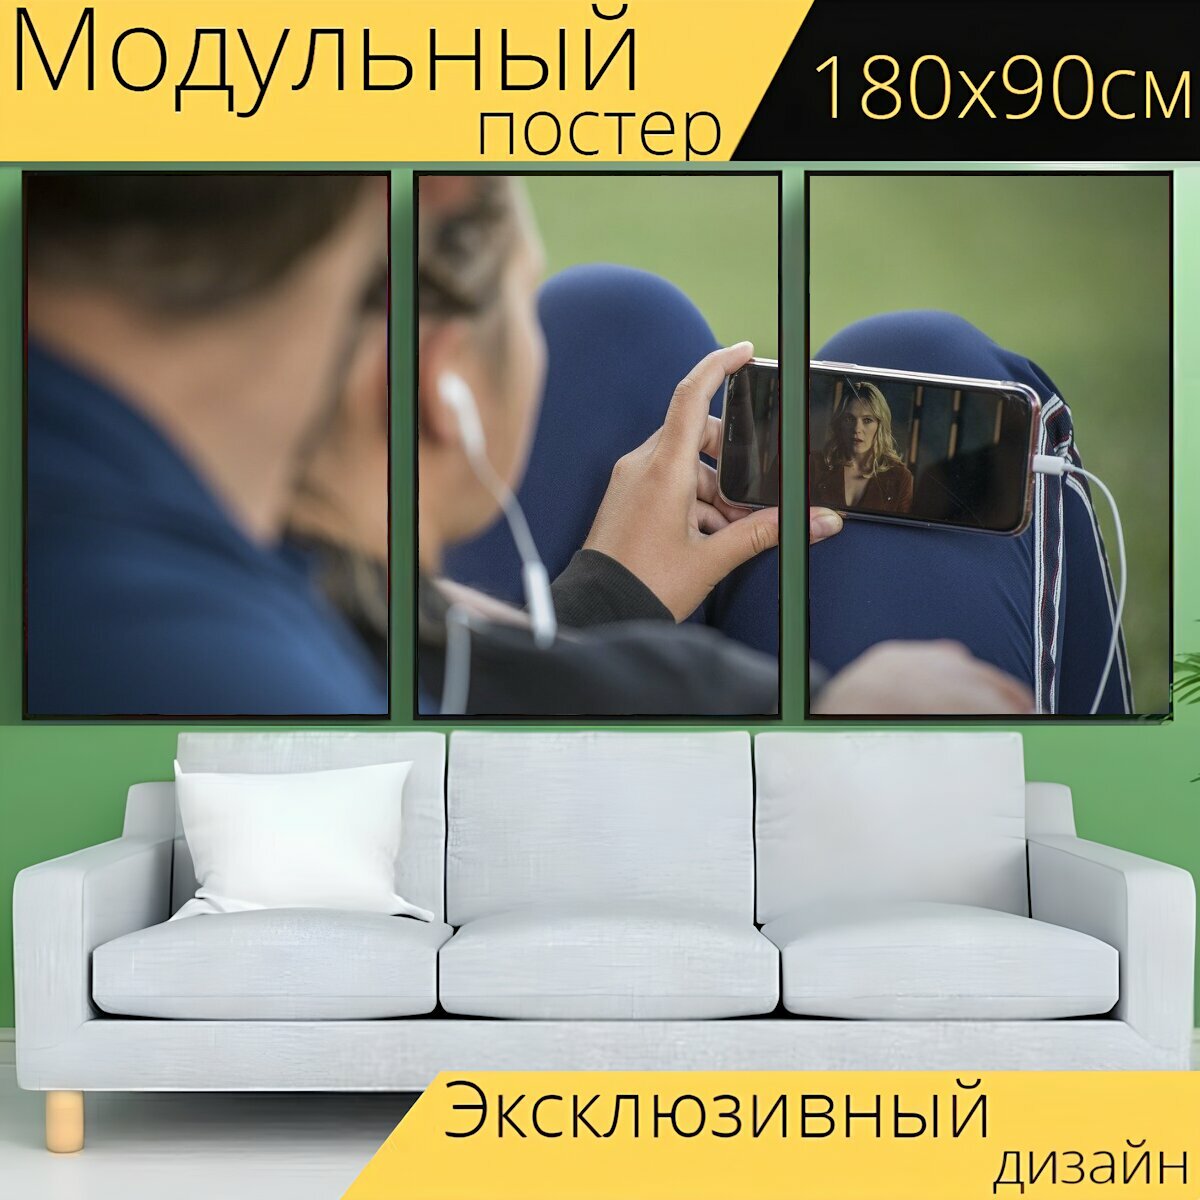 Модульный постер "Мобильный телефон, видео, смартфон" 180 x 90 см. для интерьера